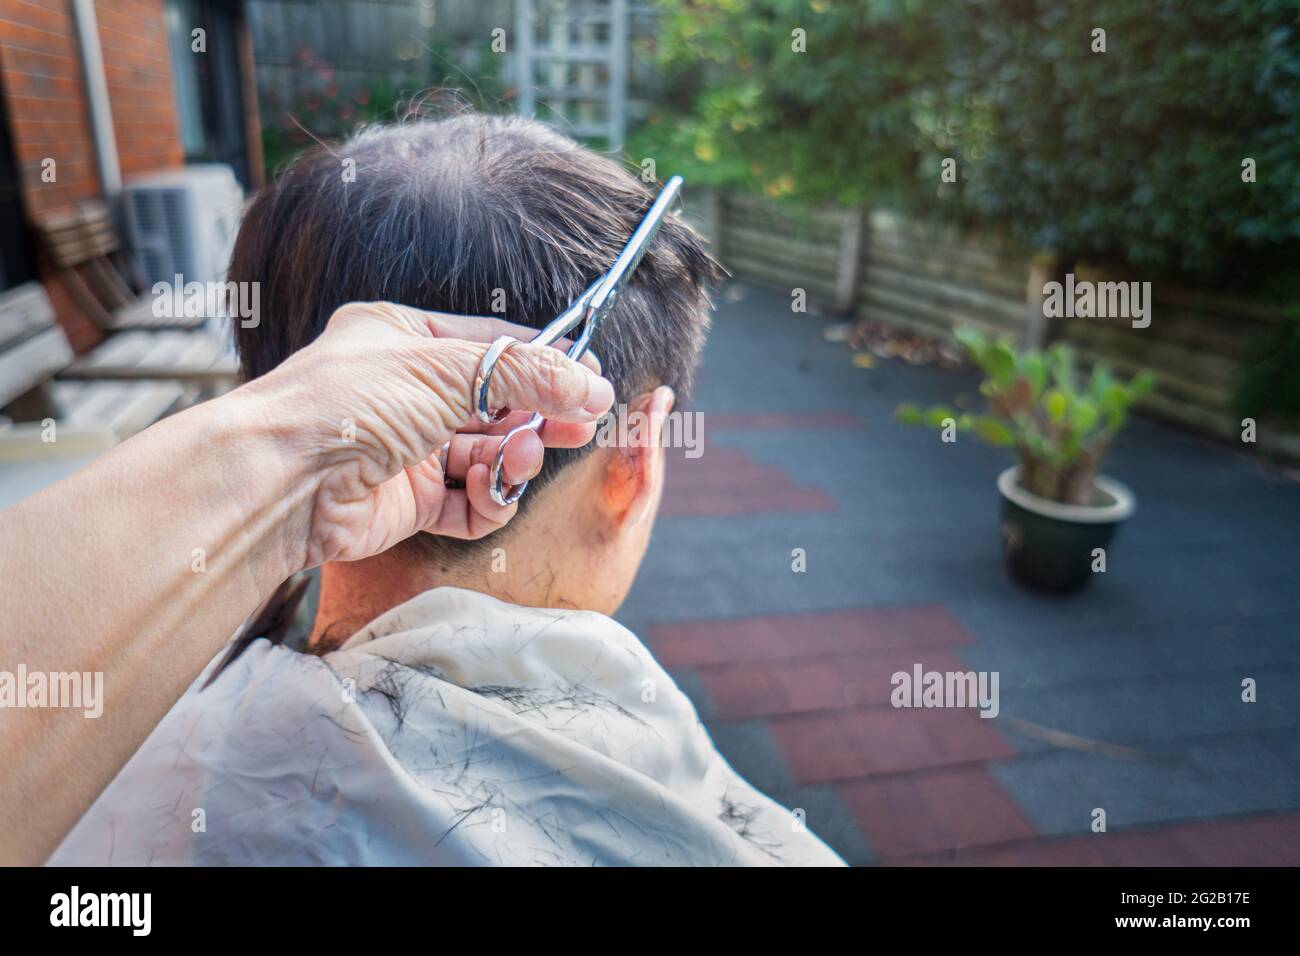 Un homme obtient une coupe de cheveux à la maison dans l'arrière-cour - soins de cheveux, coupe de cheveux, concept d'auto-isolation. Banque D'Images